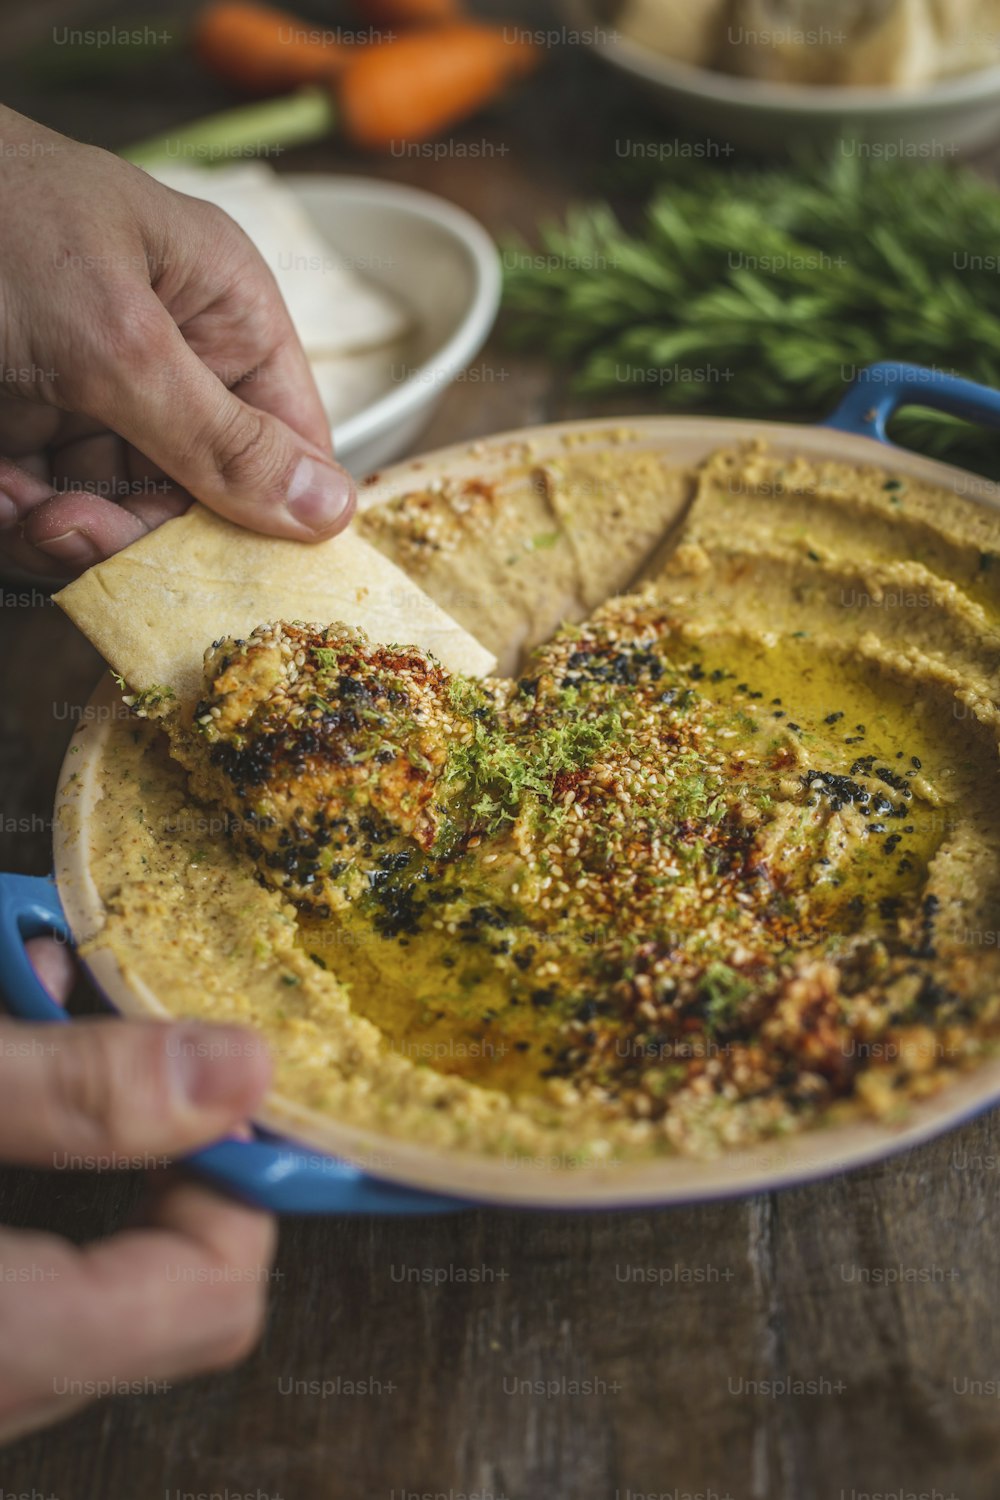 a person dipping a tortilla into a bowl of hummus